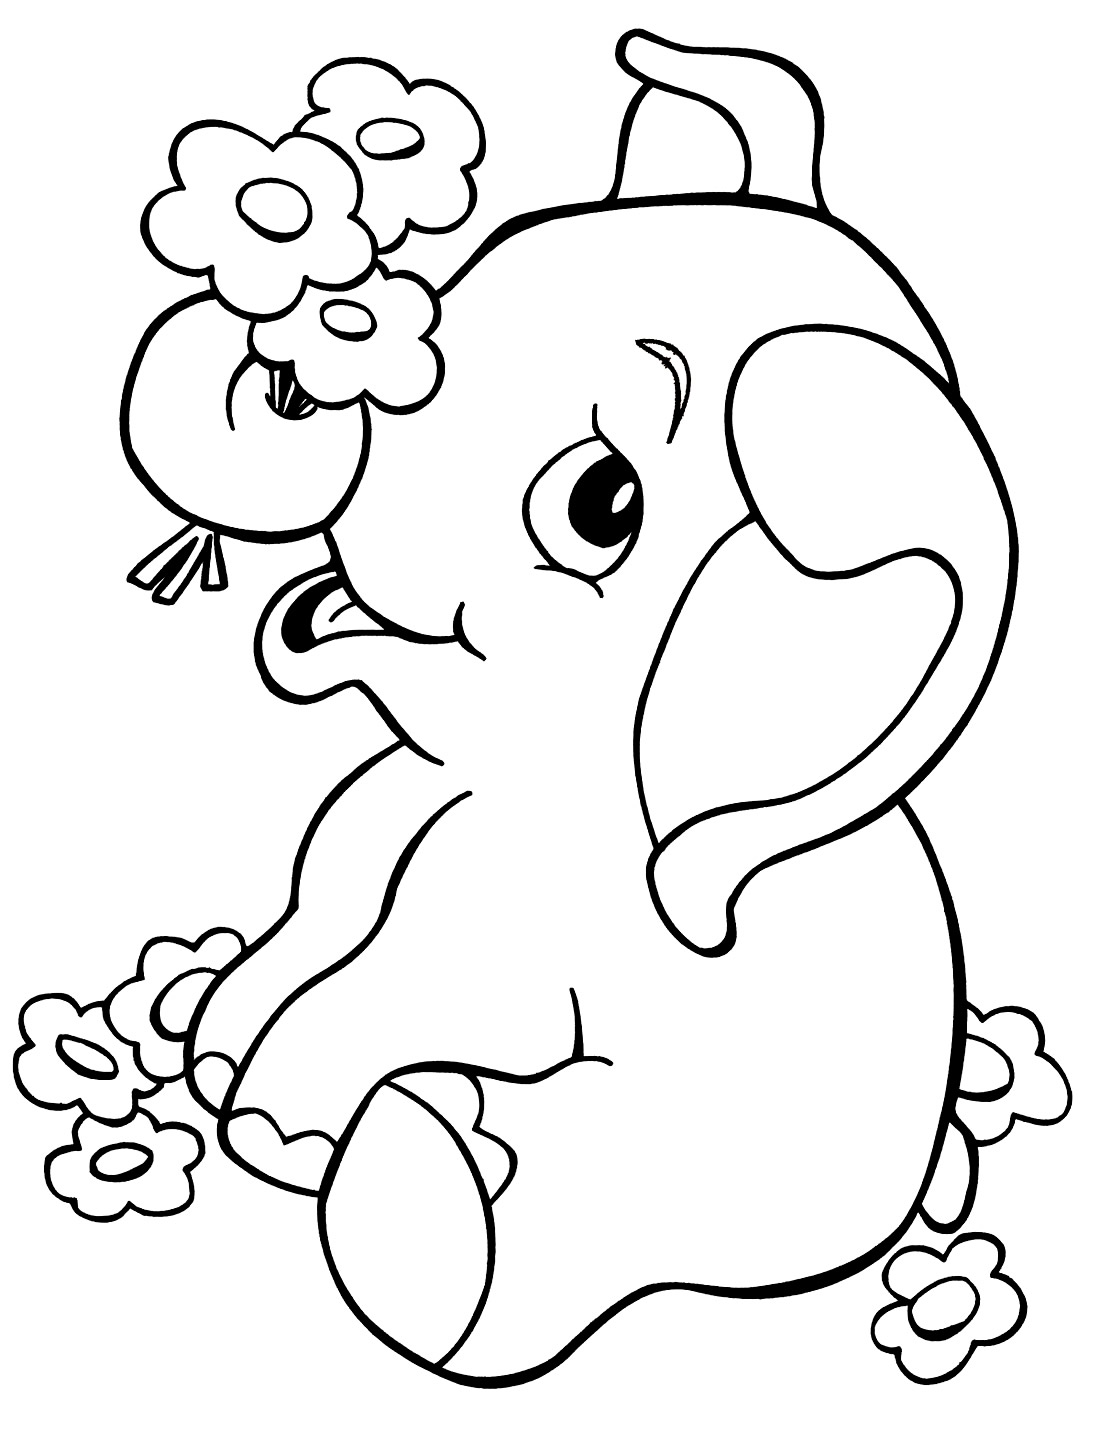 Imagem de elefante para colorir